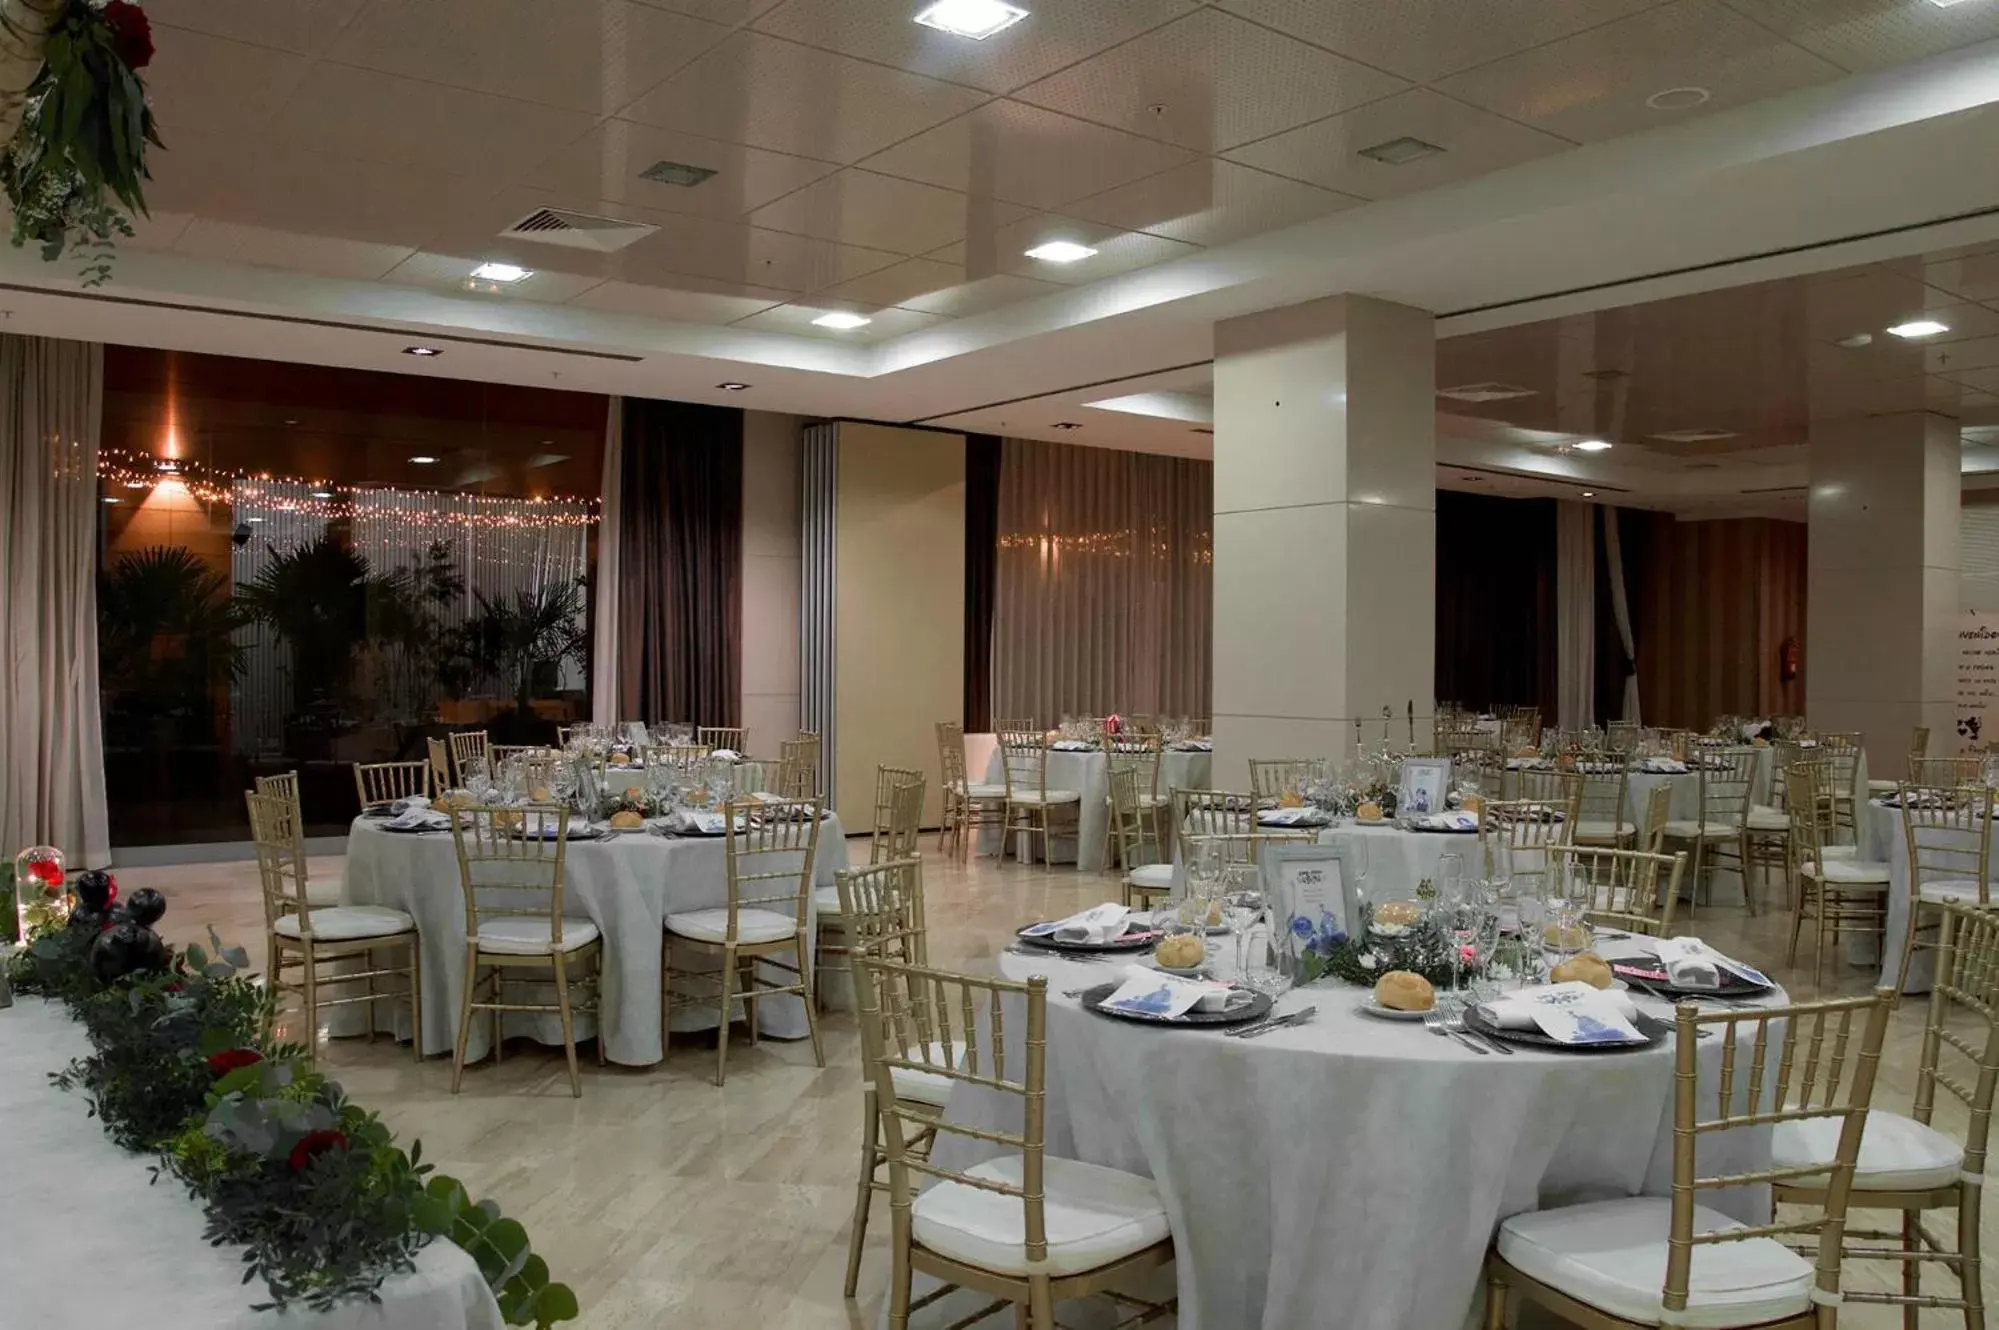 Banquet/Function facilities, Banquet Facilities in Gran Hotel Don Manuel